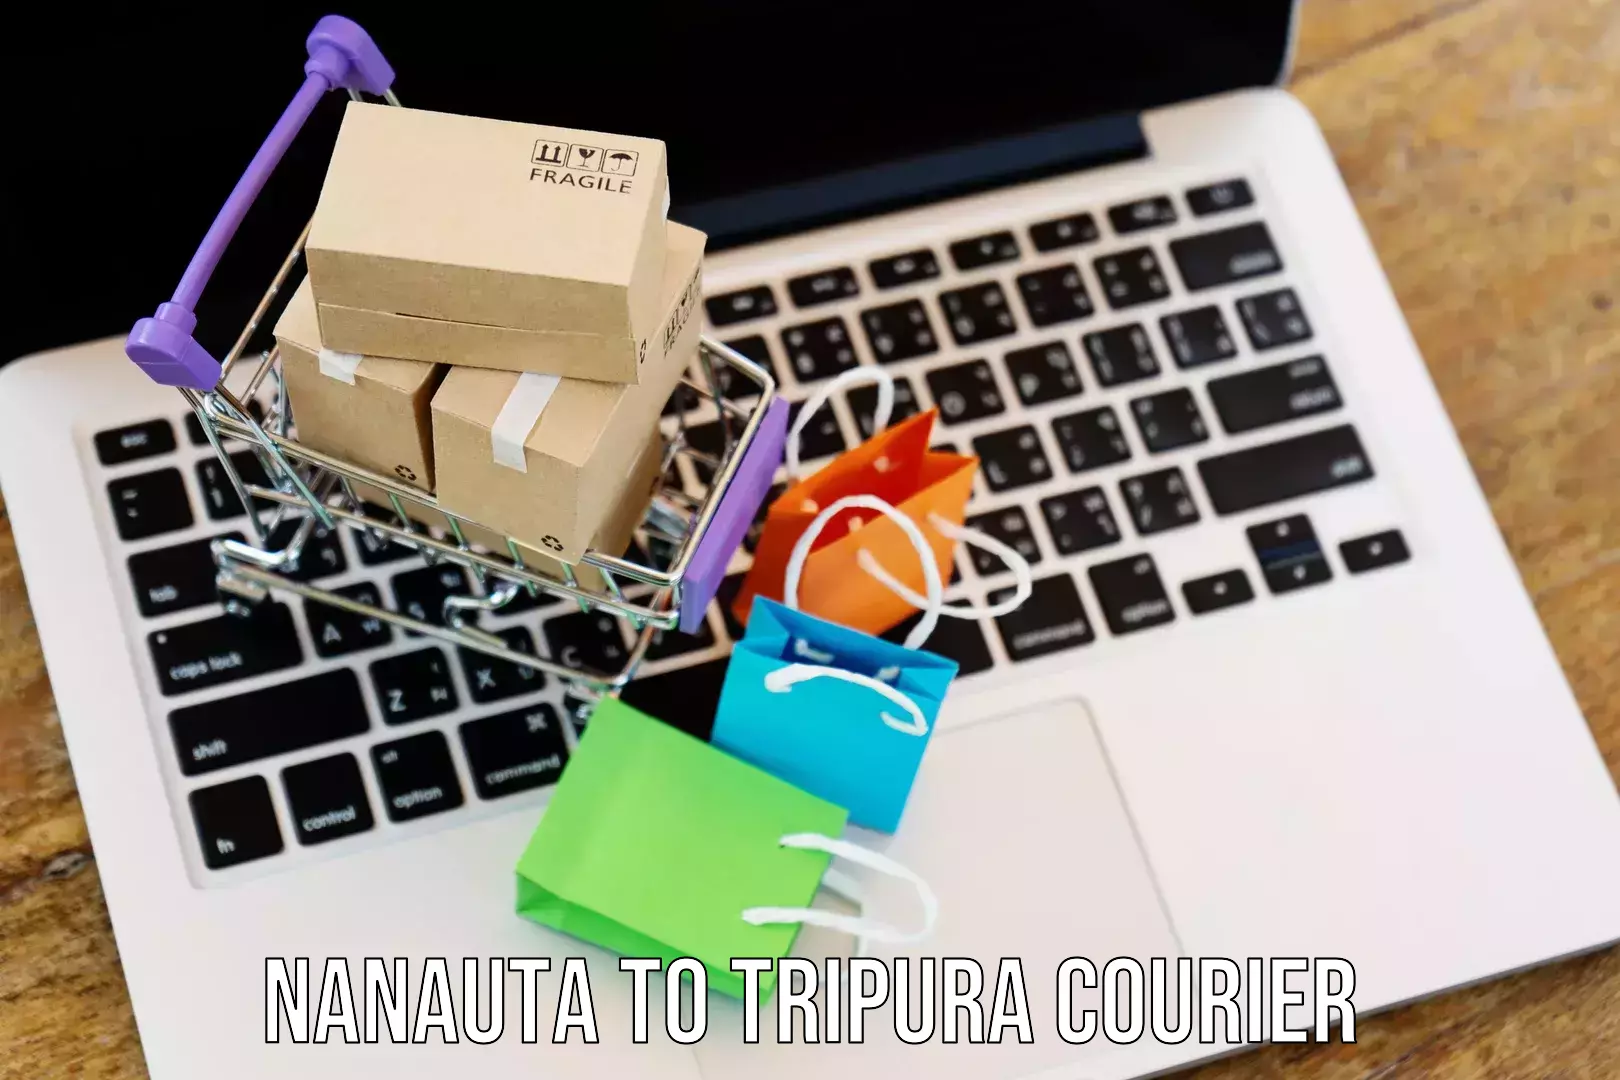 Courier service innovation Nanauta to Santirbazar